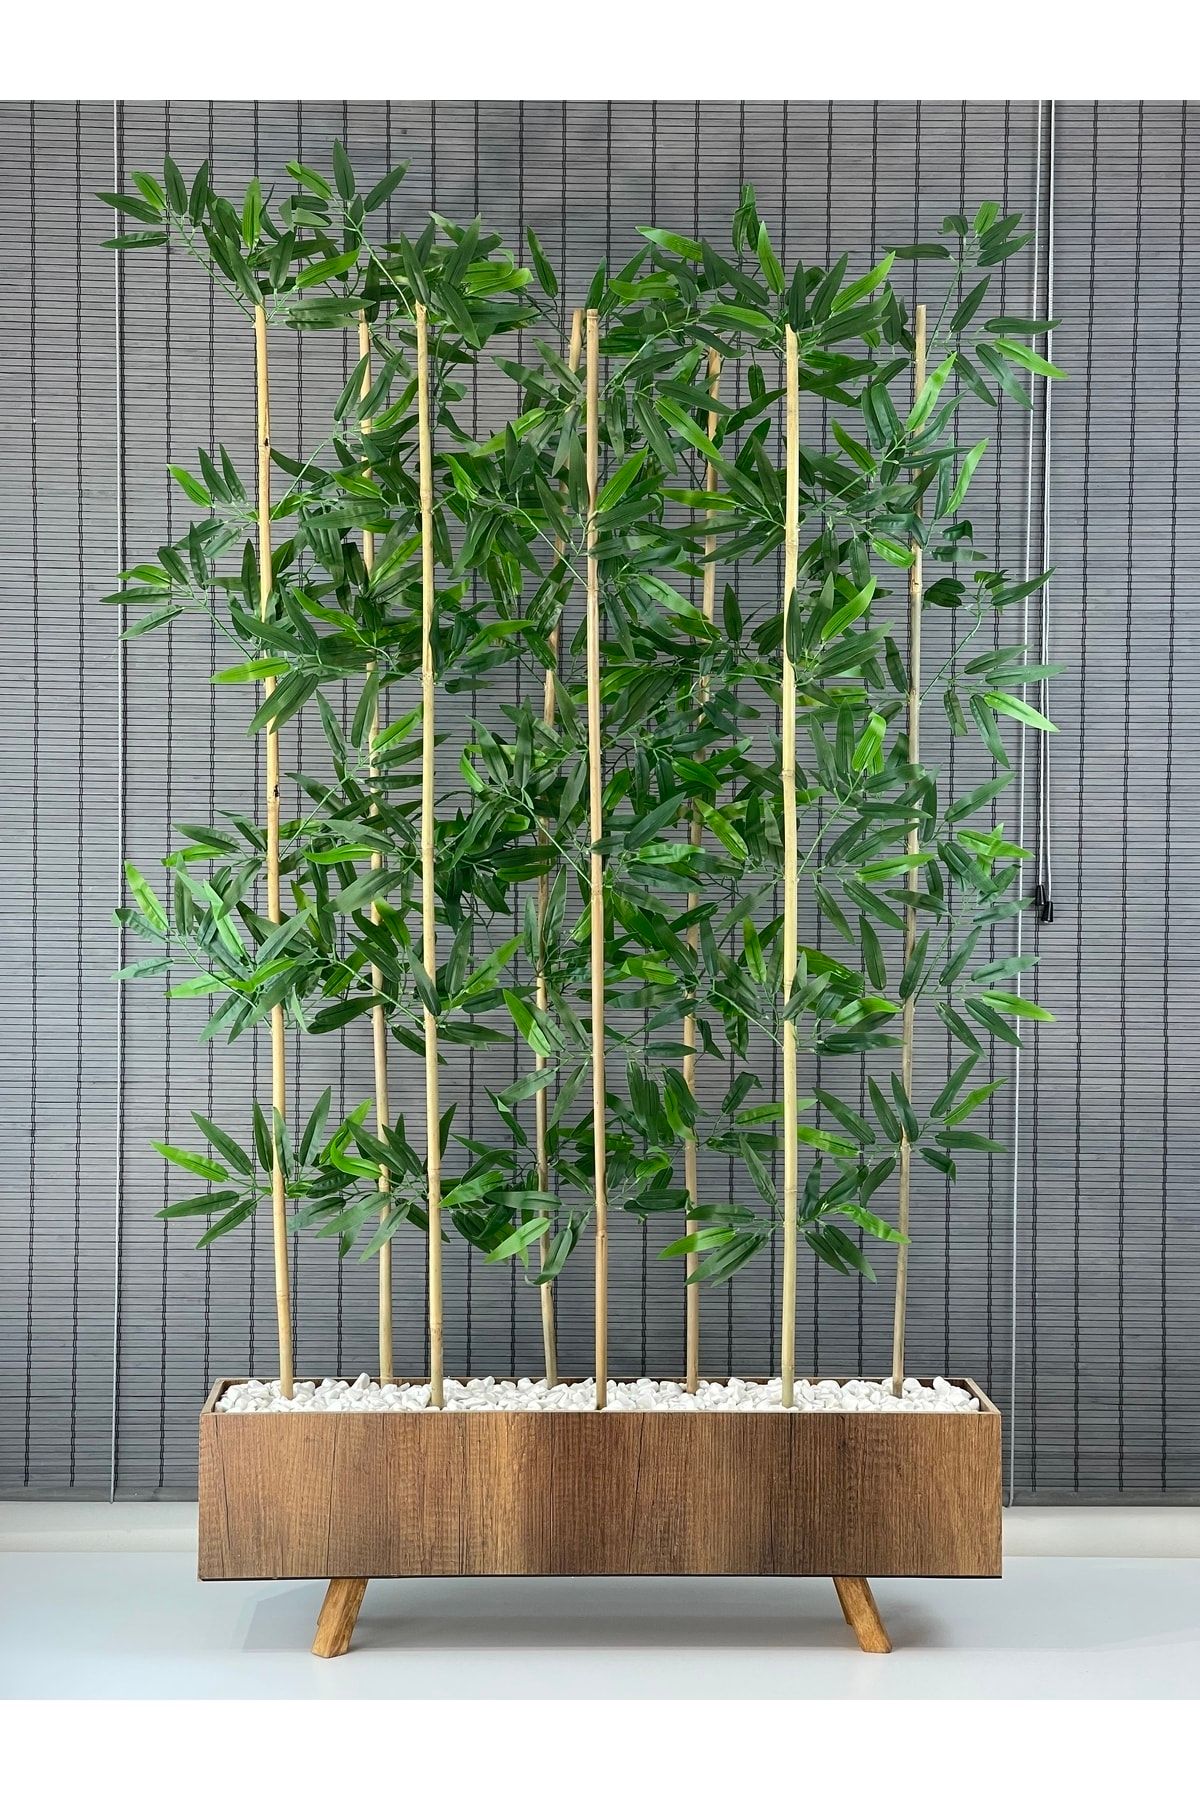 Bahçem Ahşap Ayaklı 80cm Saksılı 8 Gövde 150cm Dikdörtgen Model Yapay Yapraklı Dekoratif Bambu Seperatör